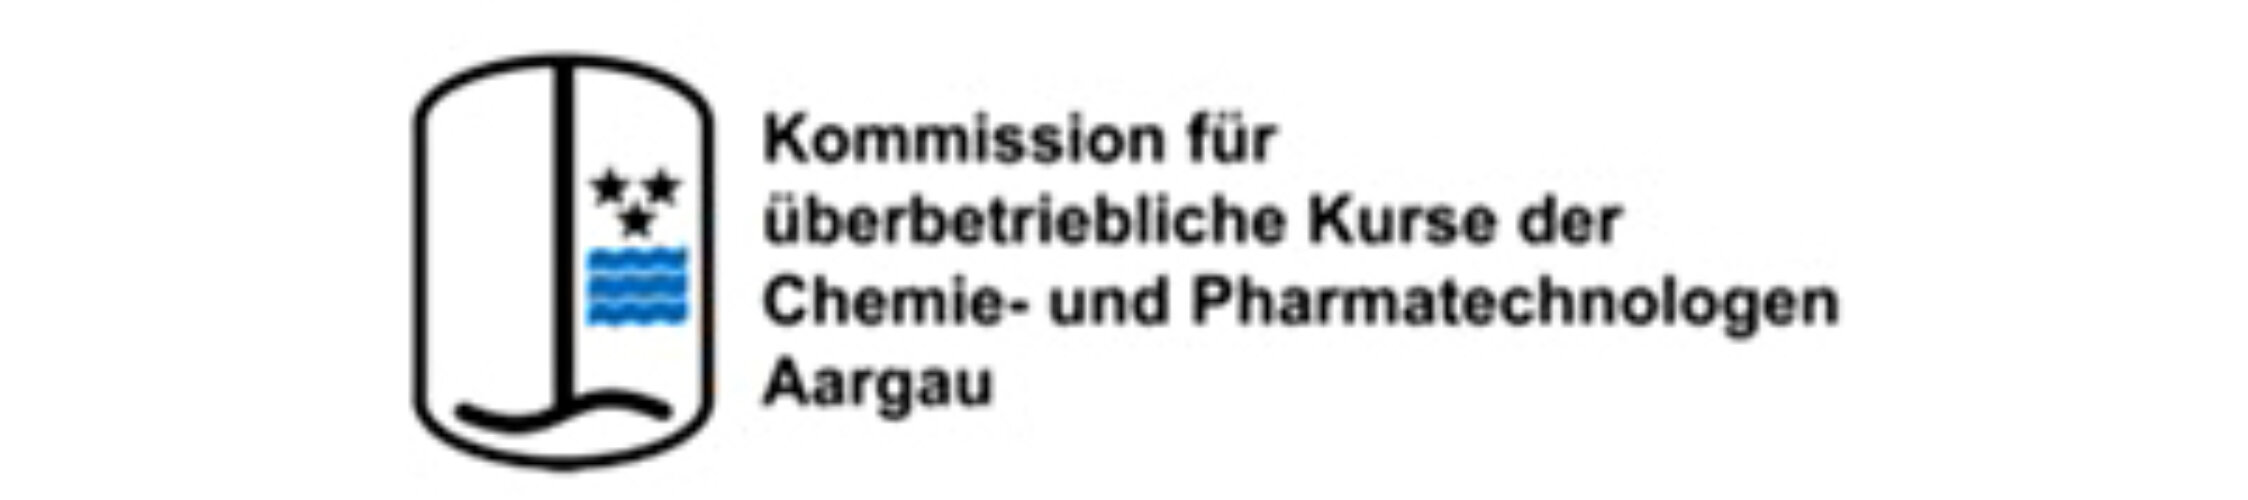 Logo Kommission Aargau def